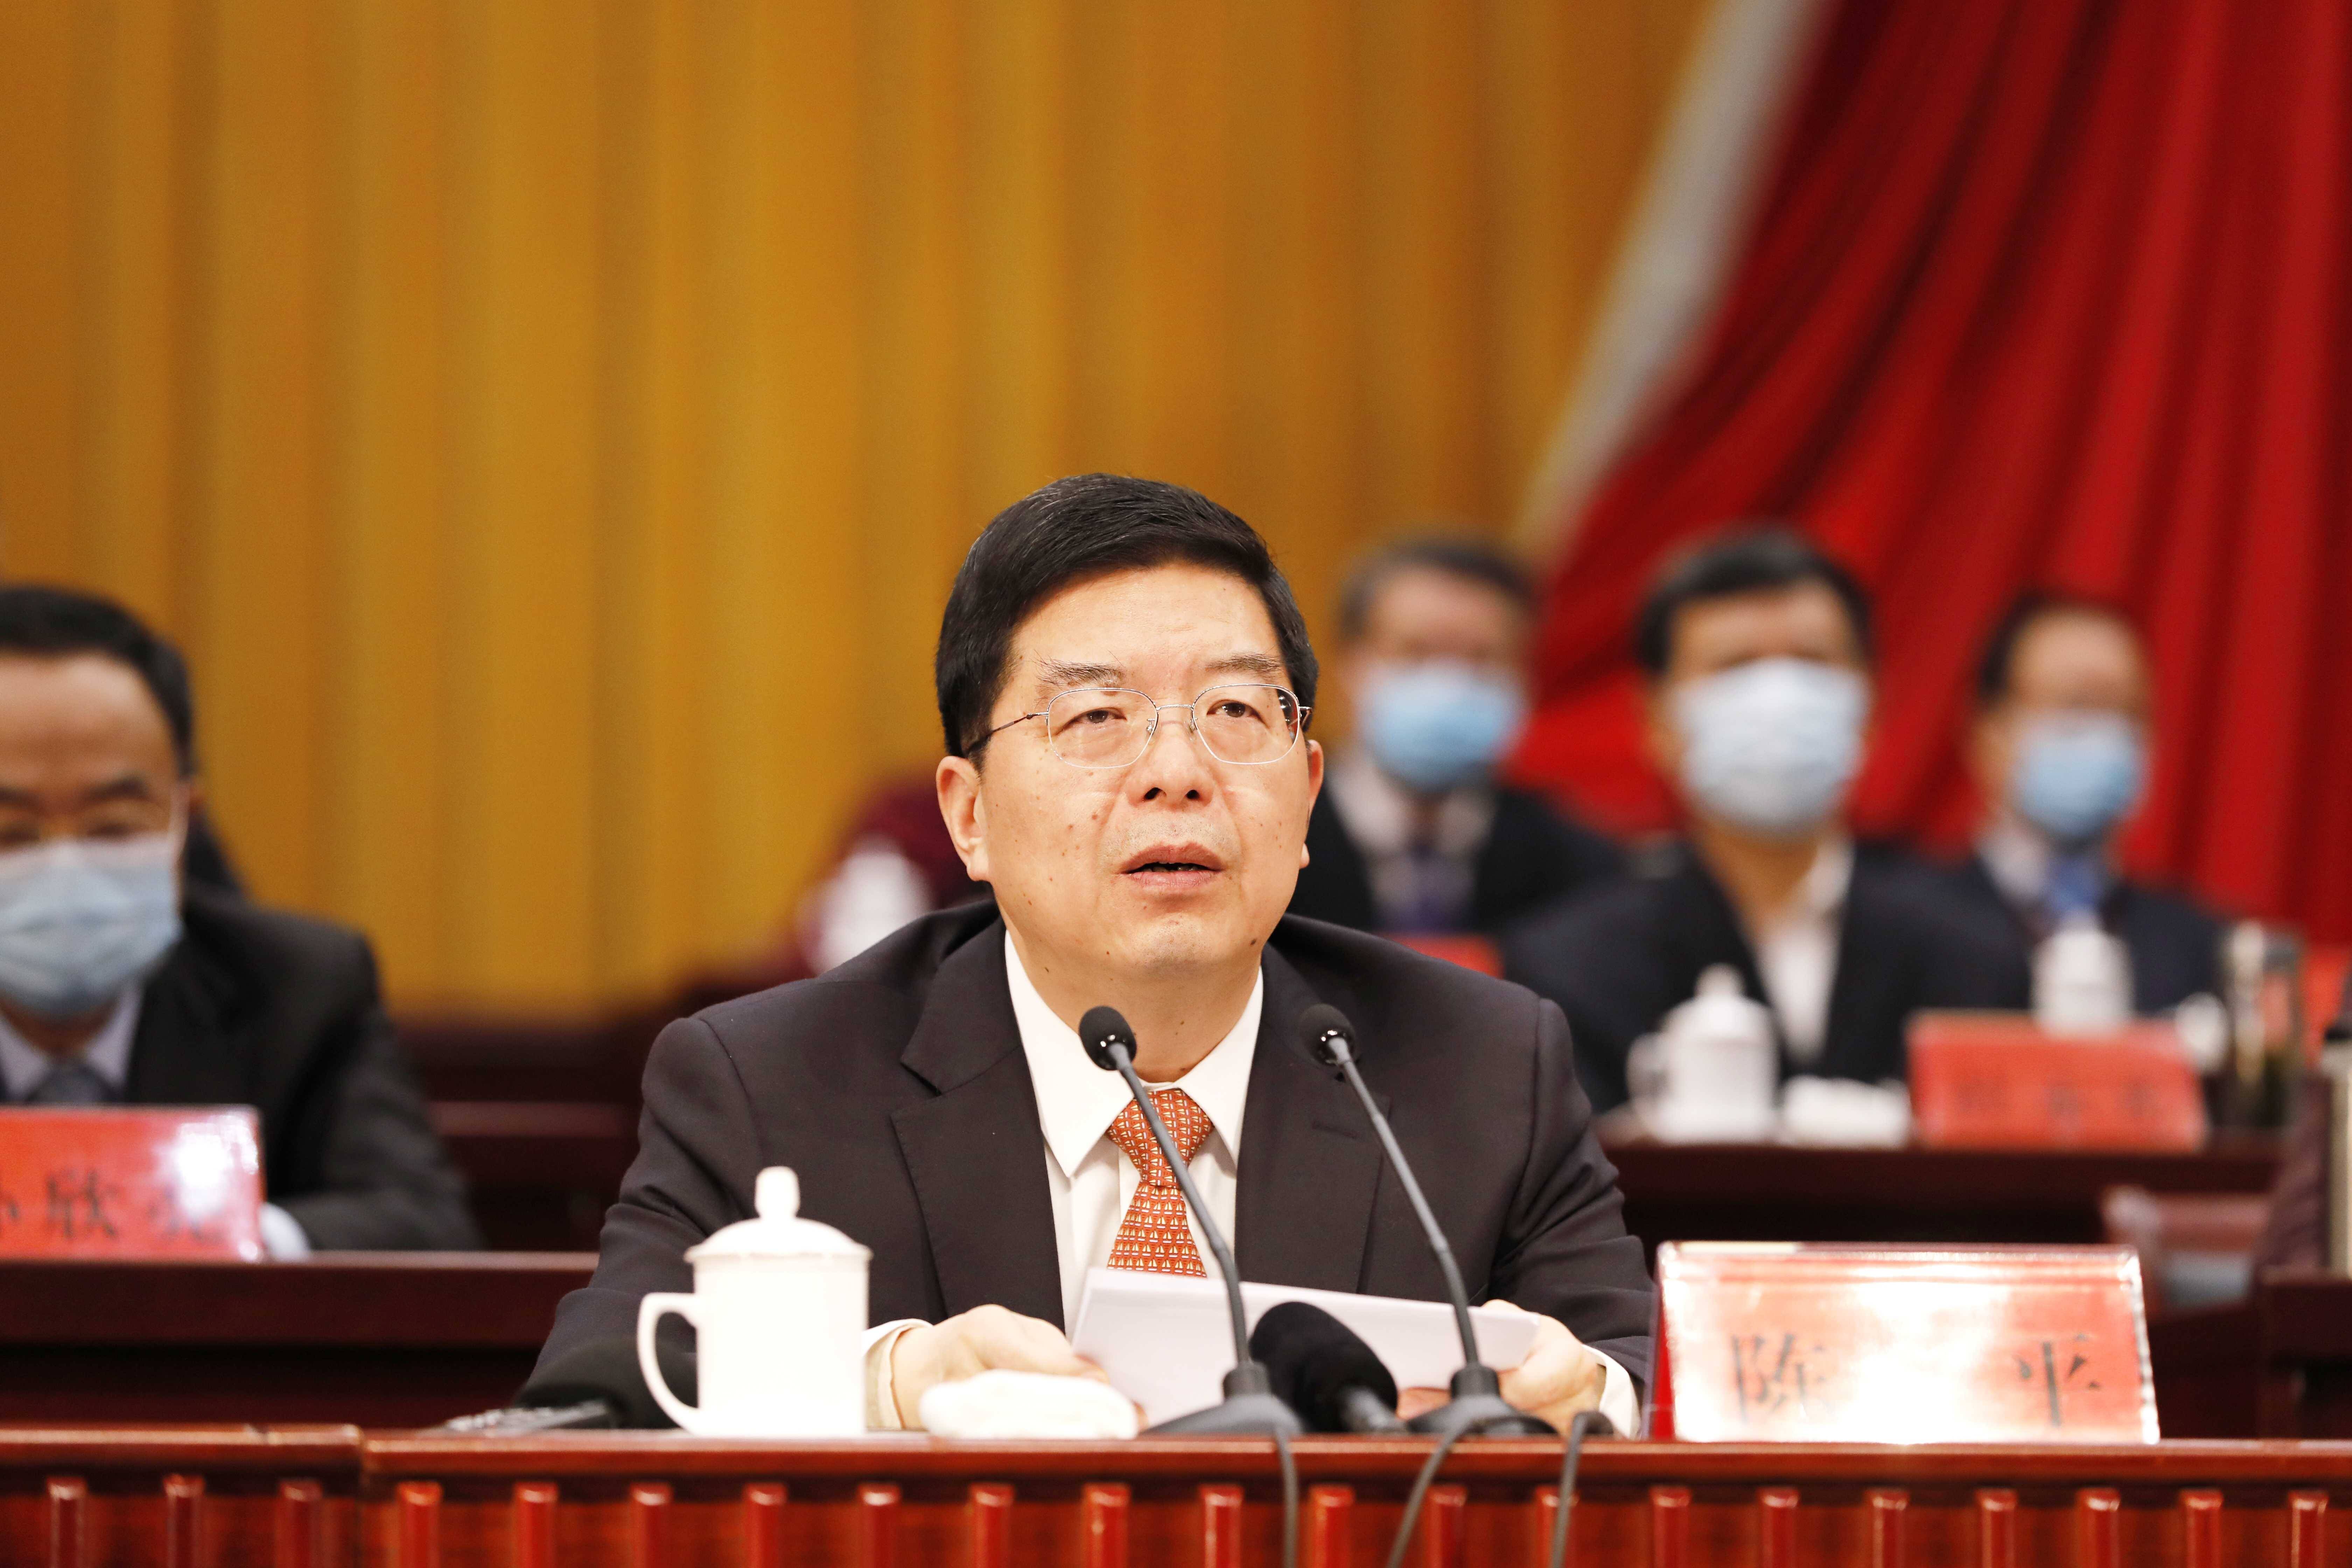 河南省公安厅推出惠警措施 落实不力领导将被约谈